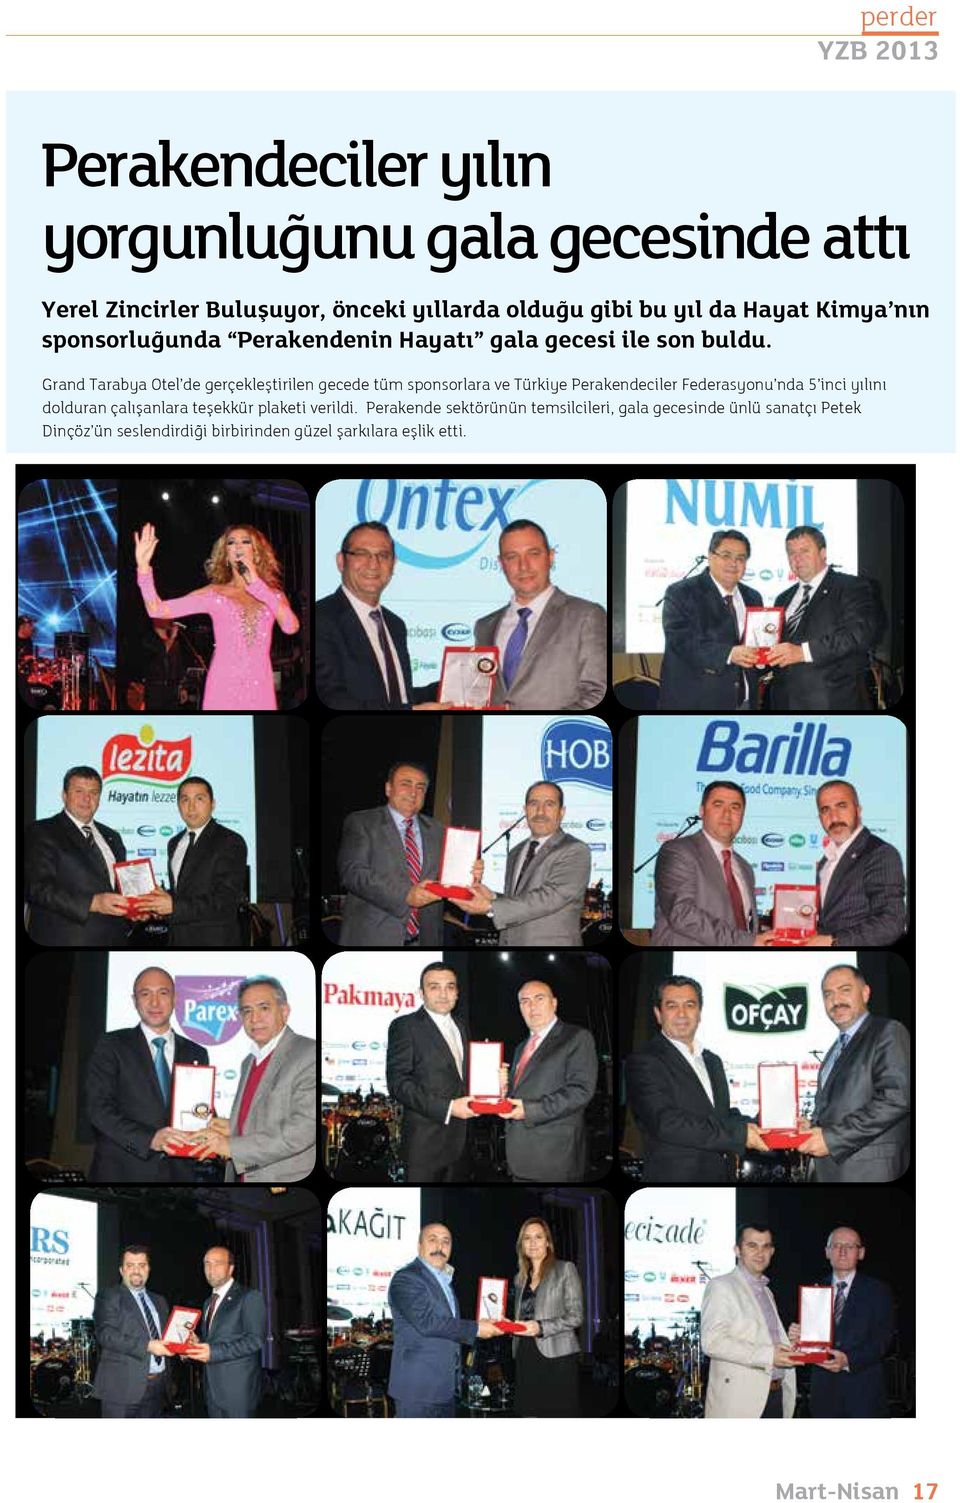 Grand Tarabya Otel de gerçekleştirilen gecede tüm sponsorlara ve Türkiye Perakendeciler Federasyonu nda 5 inci yılını dolduran